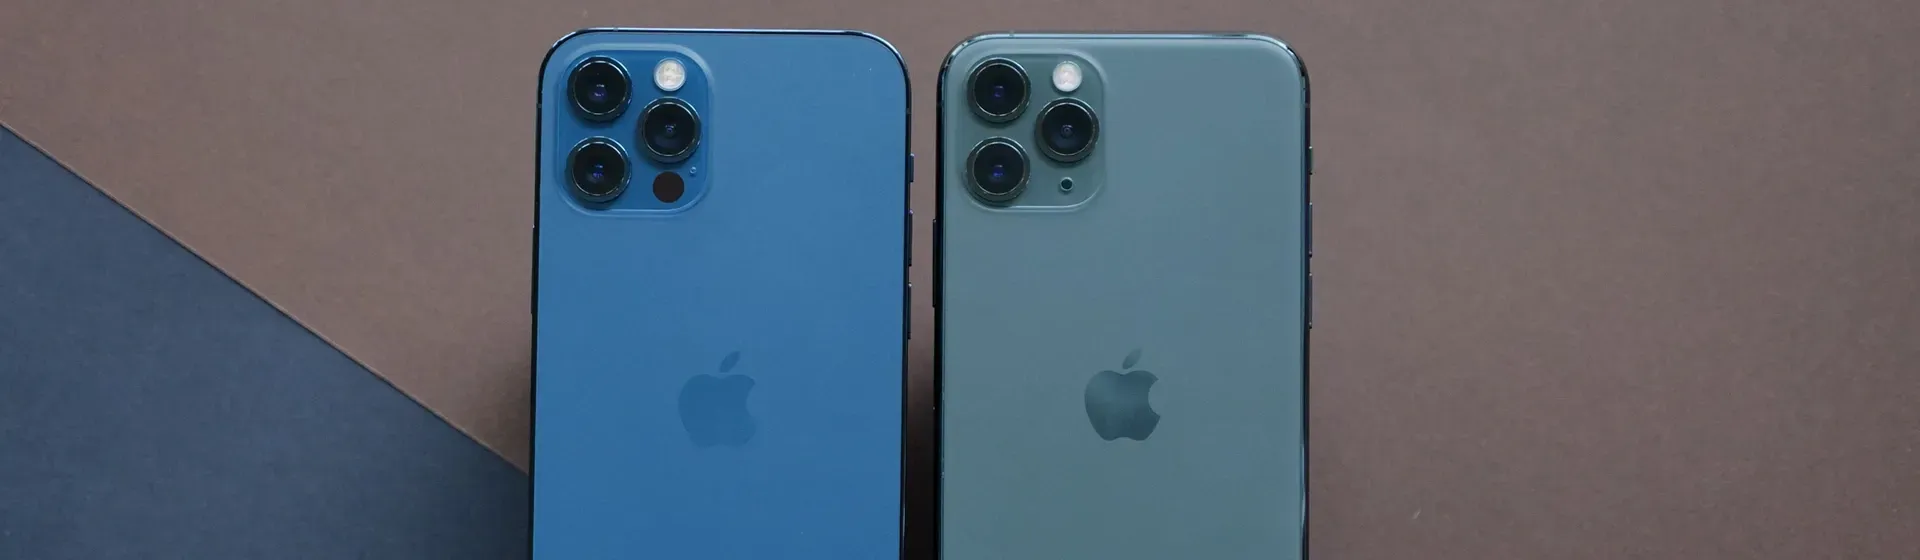 Dois modelos de celular 64GB iPhone 12 sobre mesa de madeira